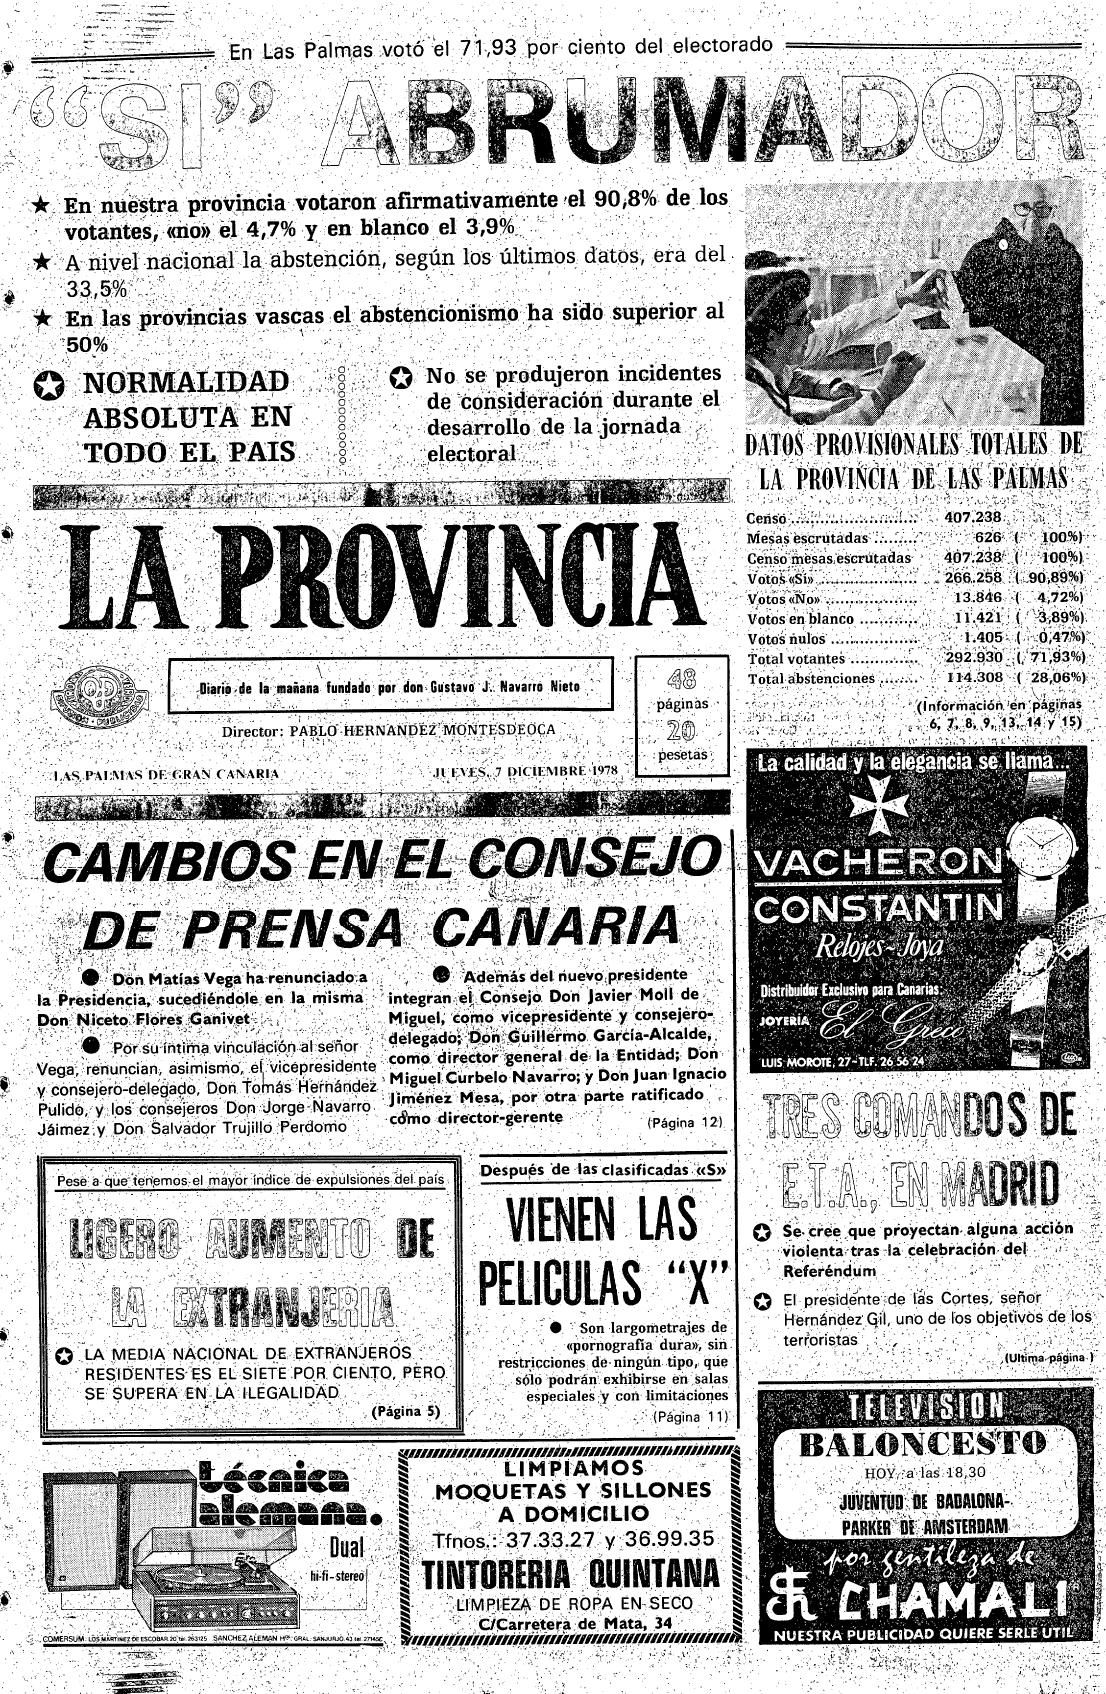 EN DICIEMBRE DE 1978 COINCIDÍAN EN PORTADA EL SÍ DE LOS ESPAÑOLES A LA CONSTITUCIÓN Y LOS CAMBIOS EN EL CONSEJO DE PRENSA CANARIA.